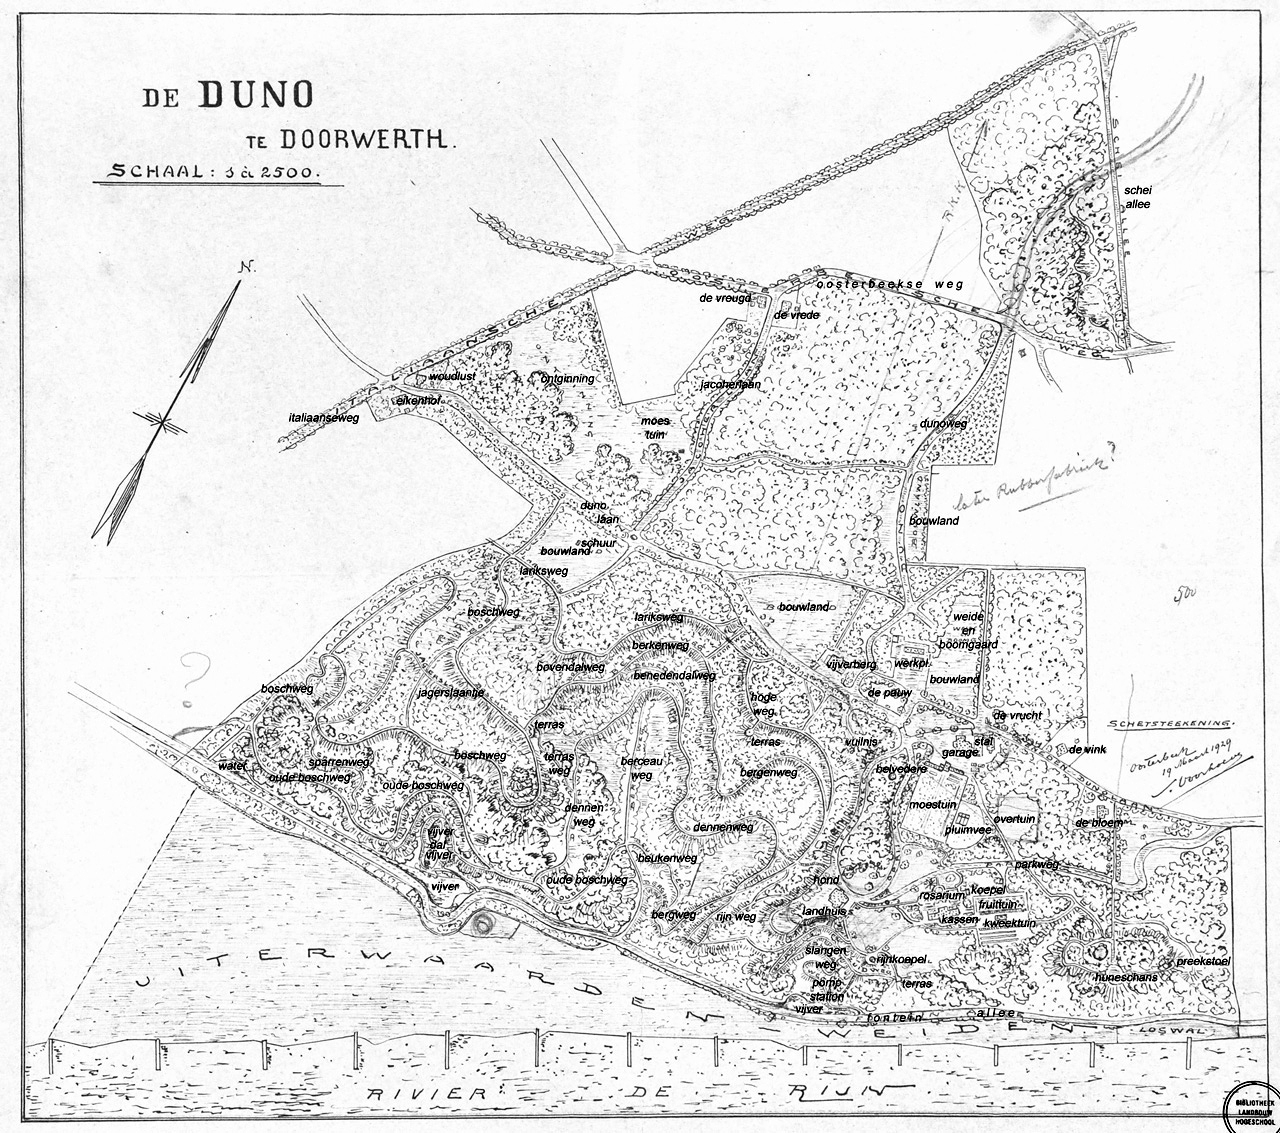 Voorhoeve 1929, Duno, Doorwerth